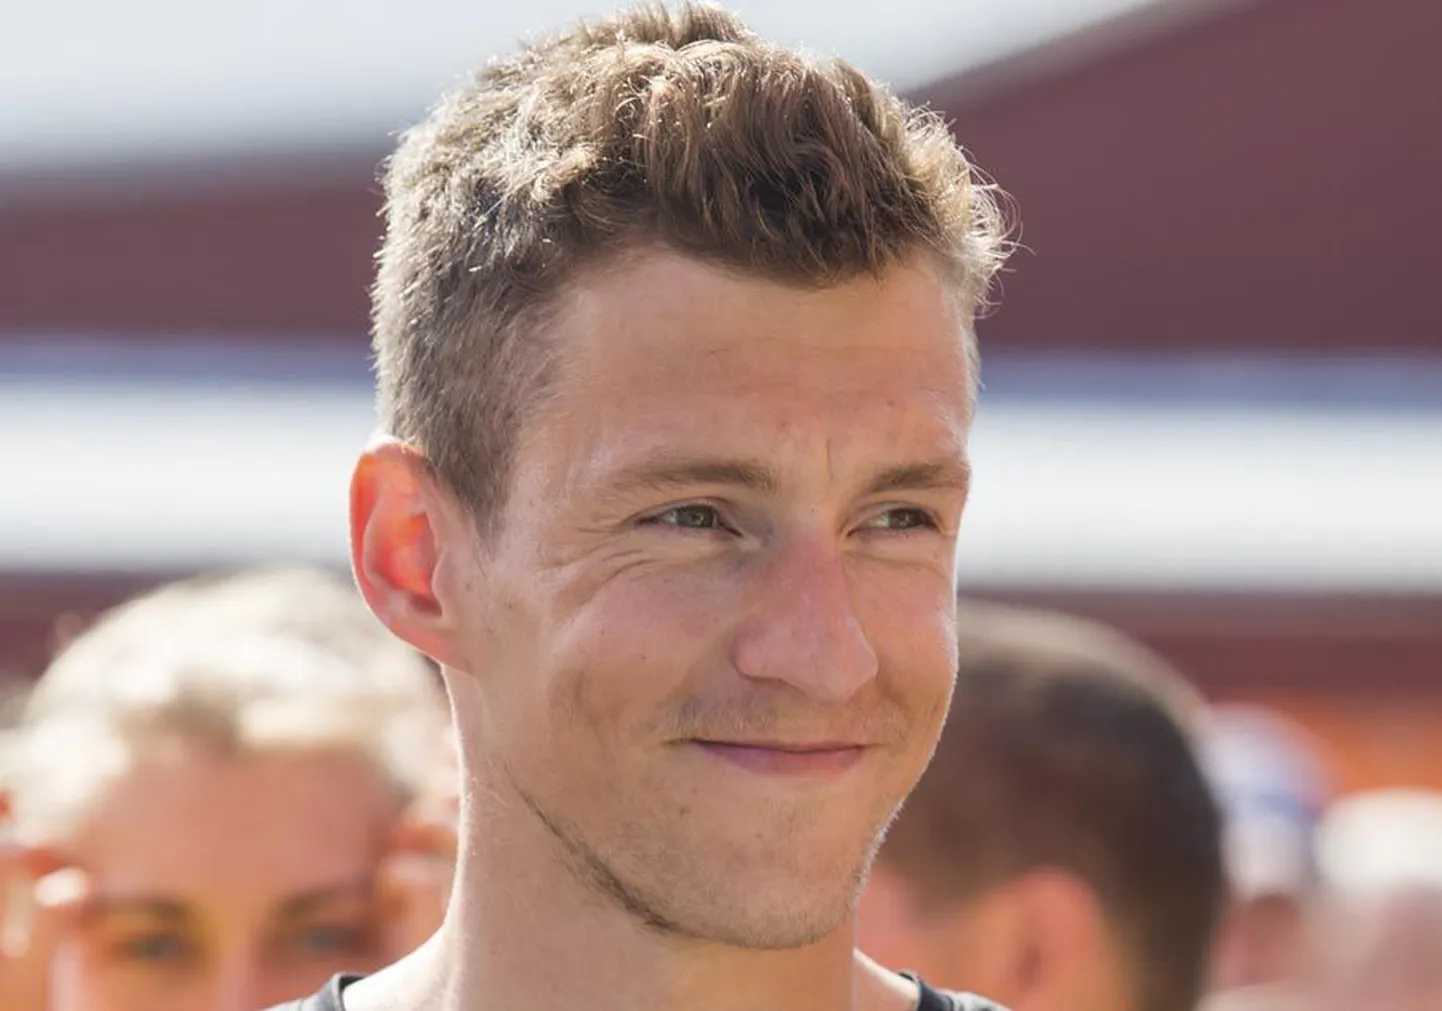 Viljandimaa mees Keio Kits võitis Elvas tehniliselt keeruka kolmekilomeetrise jooksuvõistluse.